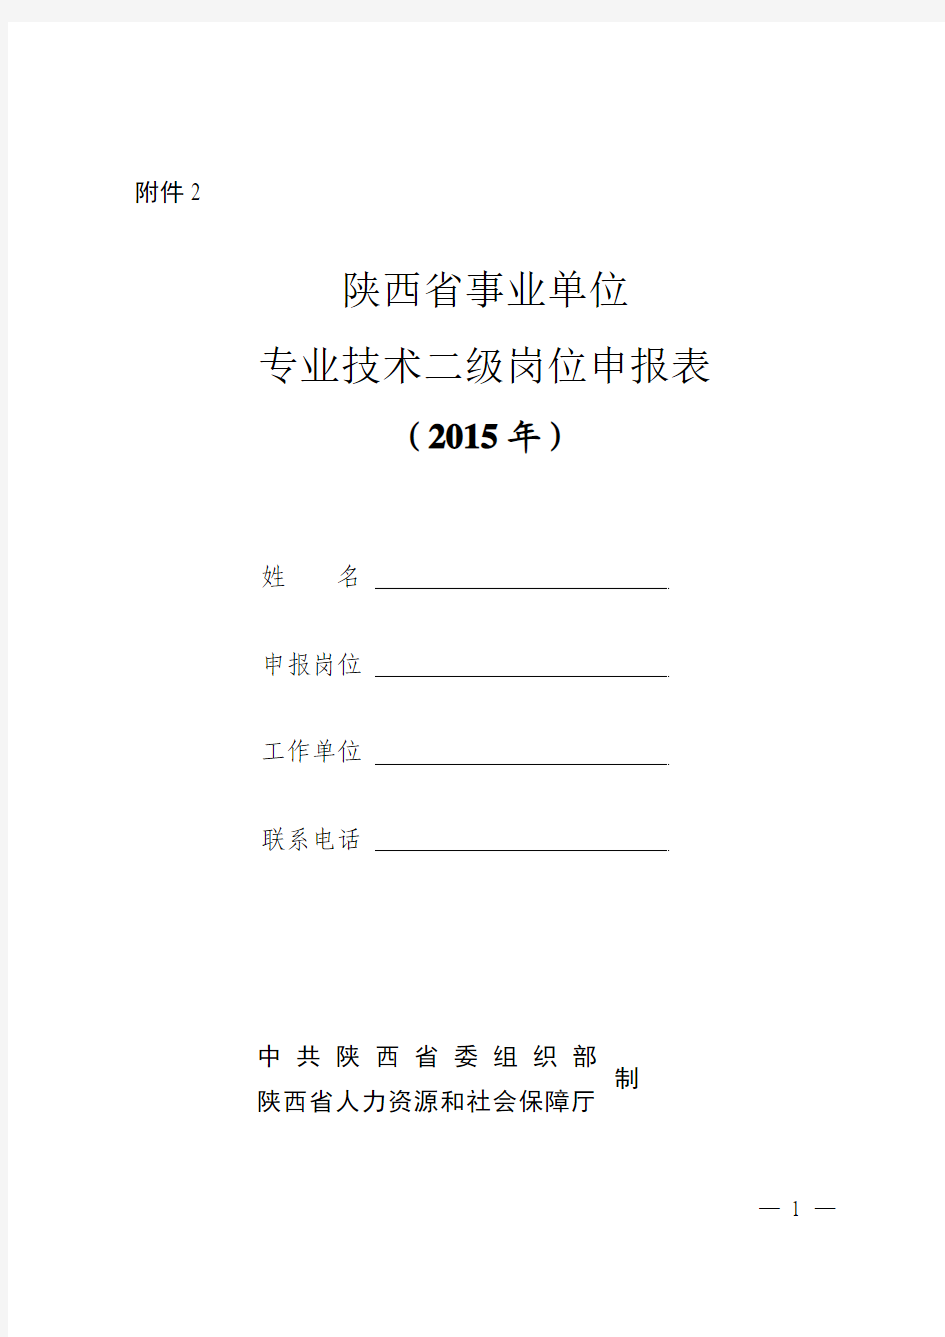 陕西省事业单位专业技术二级岗位申报表2015年